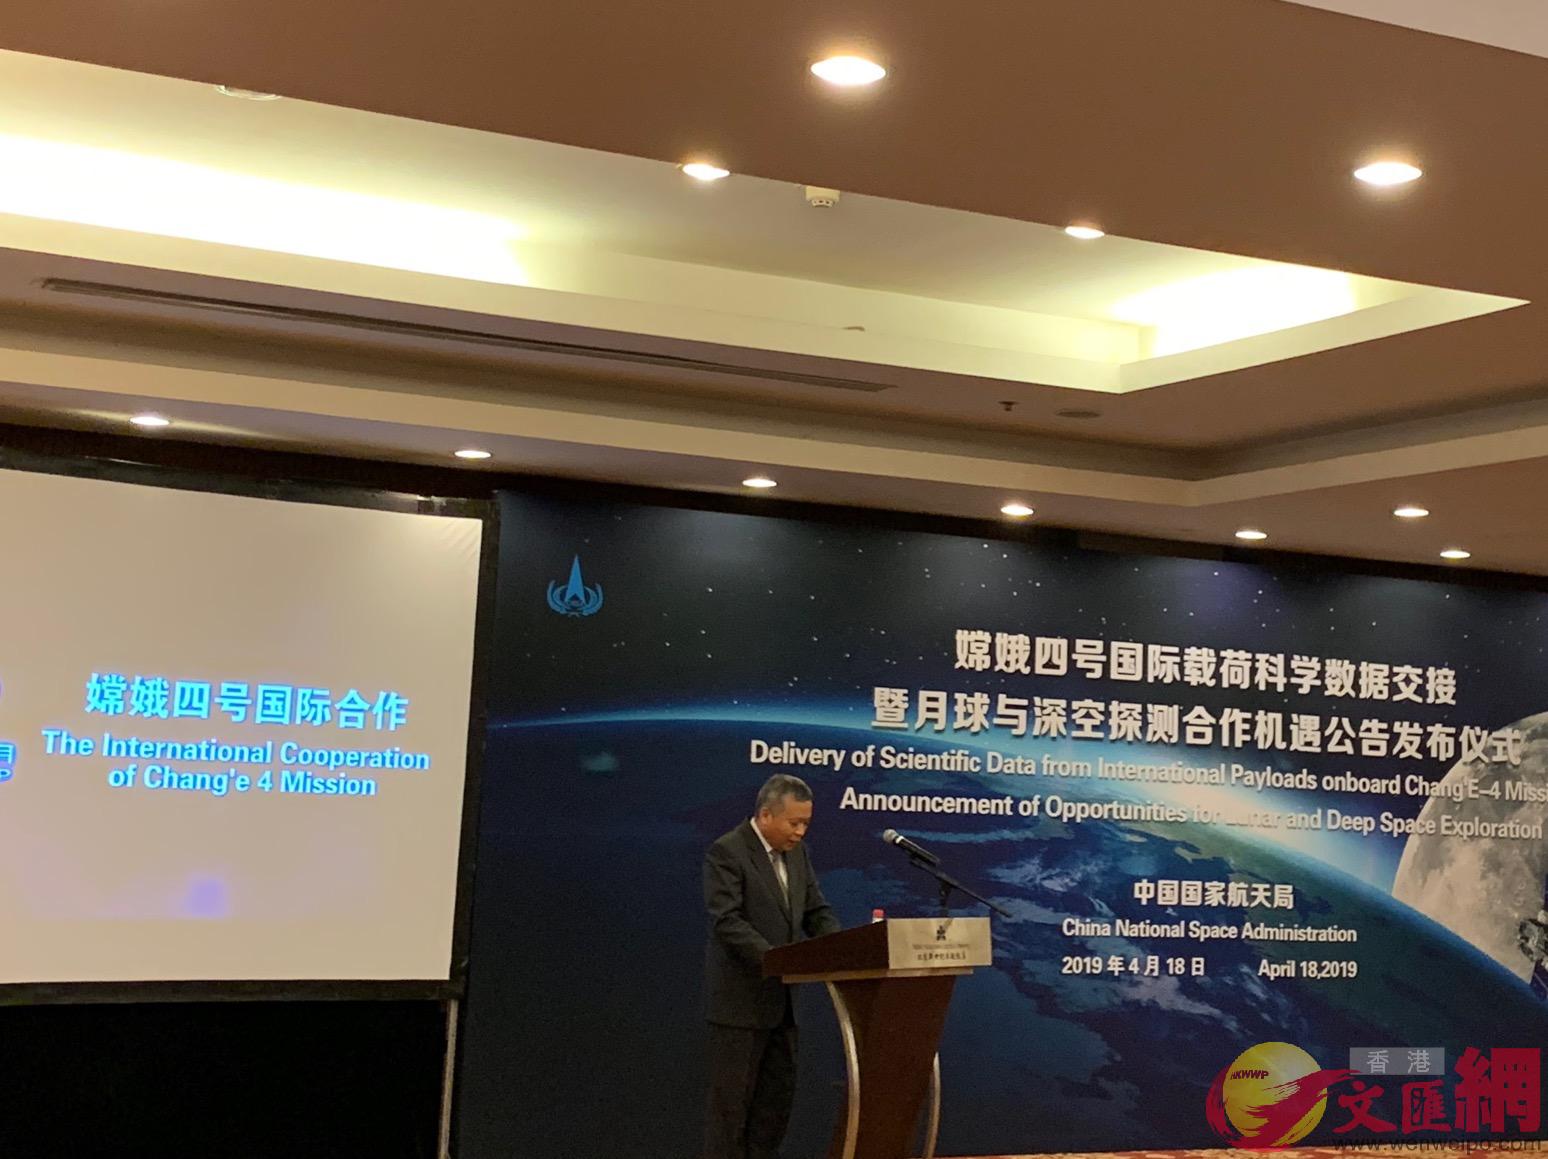 嫦娥四號國際載荷科學數據交接暨月球與深空探測合作機會公告發佈儀式在北京舉行C]記者 劉凝哲 攝^